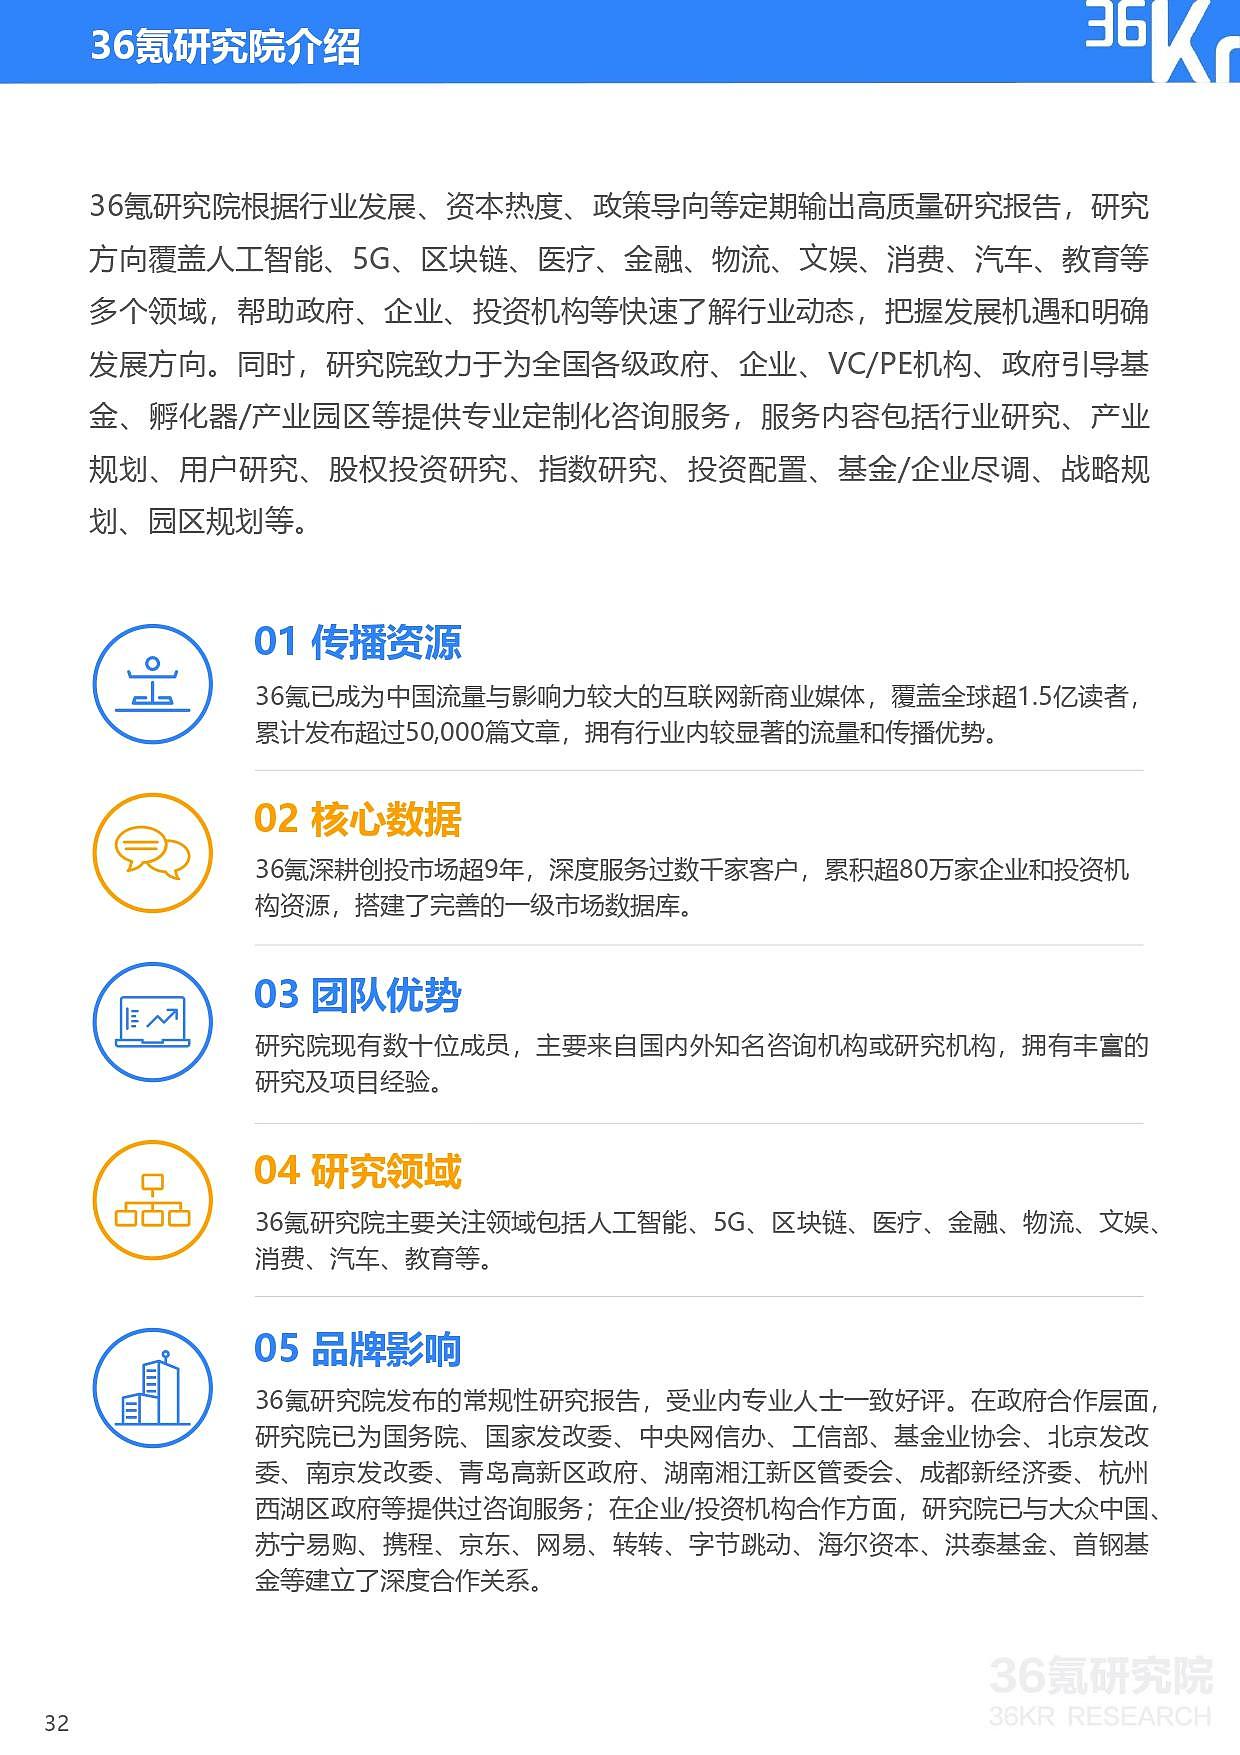 36氪研究院 | 2021年中国零售OMO研究报告 - 33